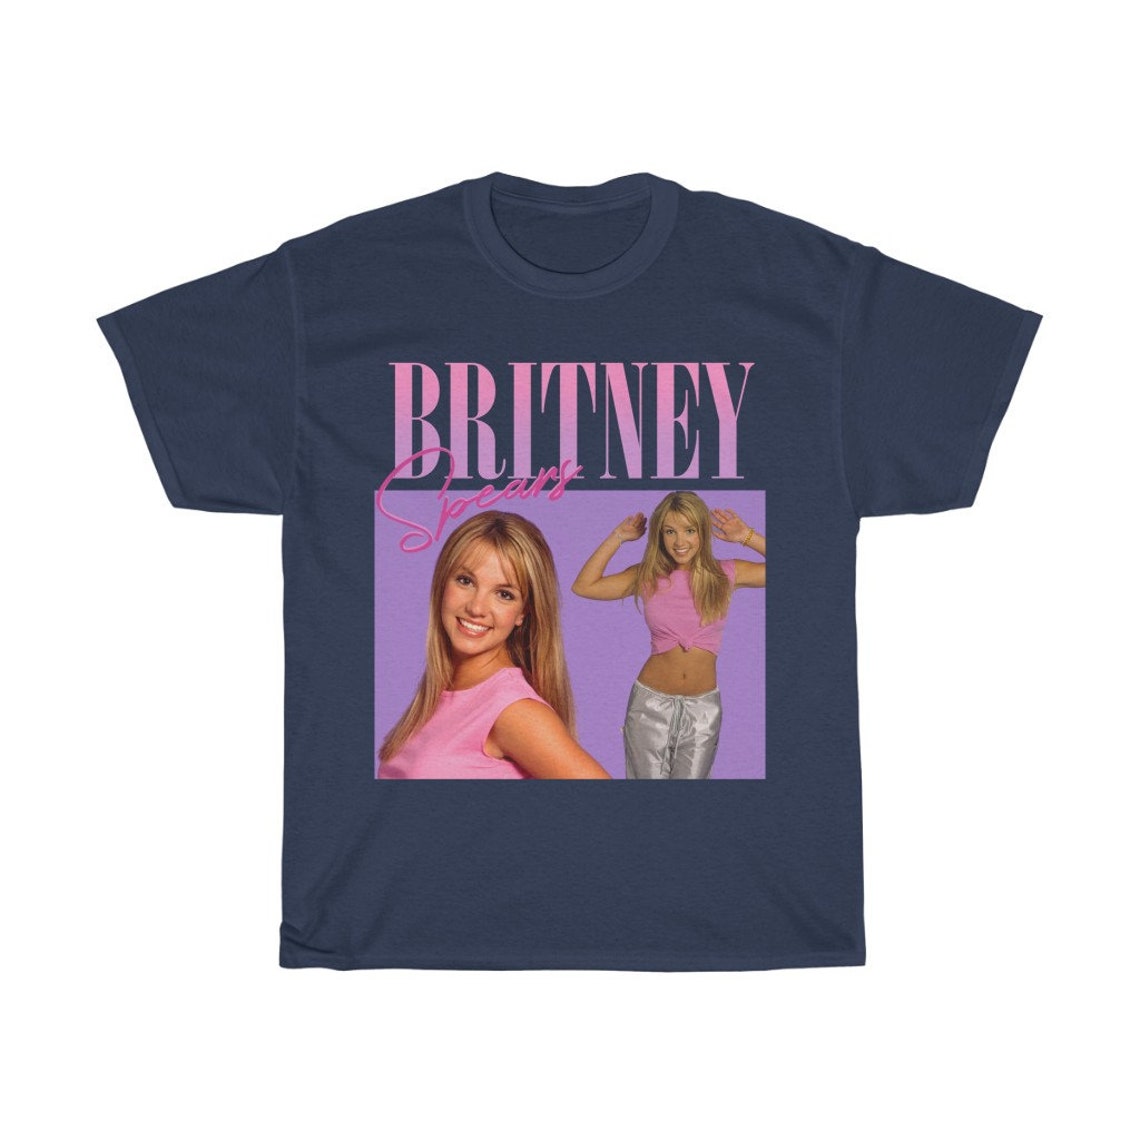 Free Britney Shirt Britney Spears Unisex T-Shirt Britney | Etsy